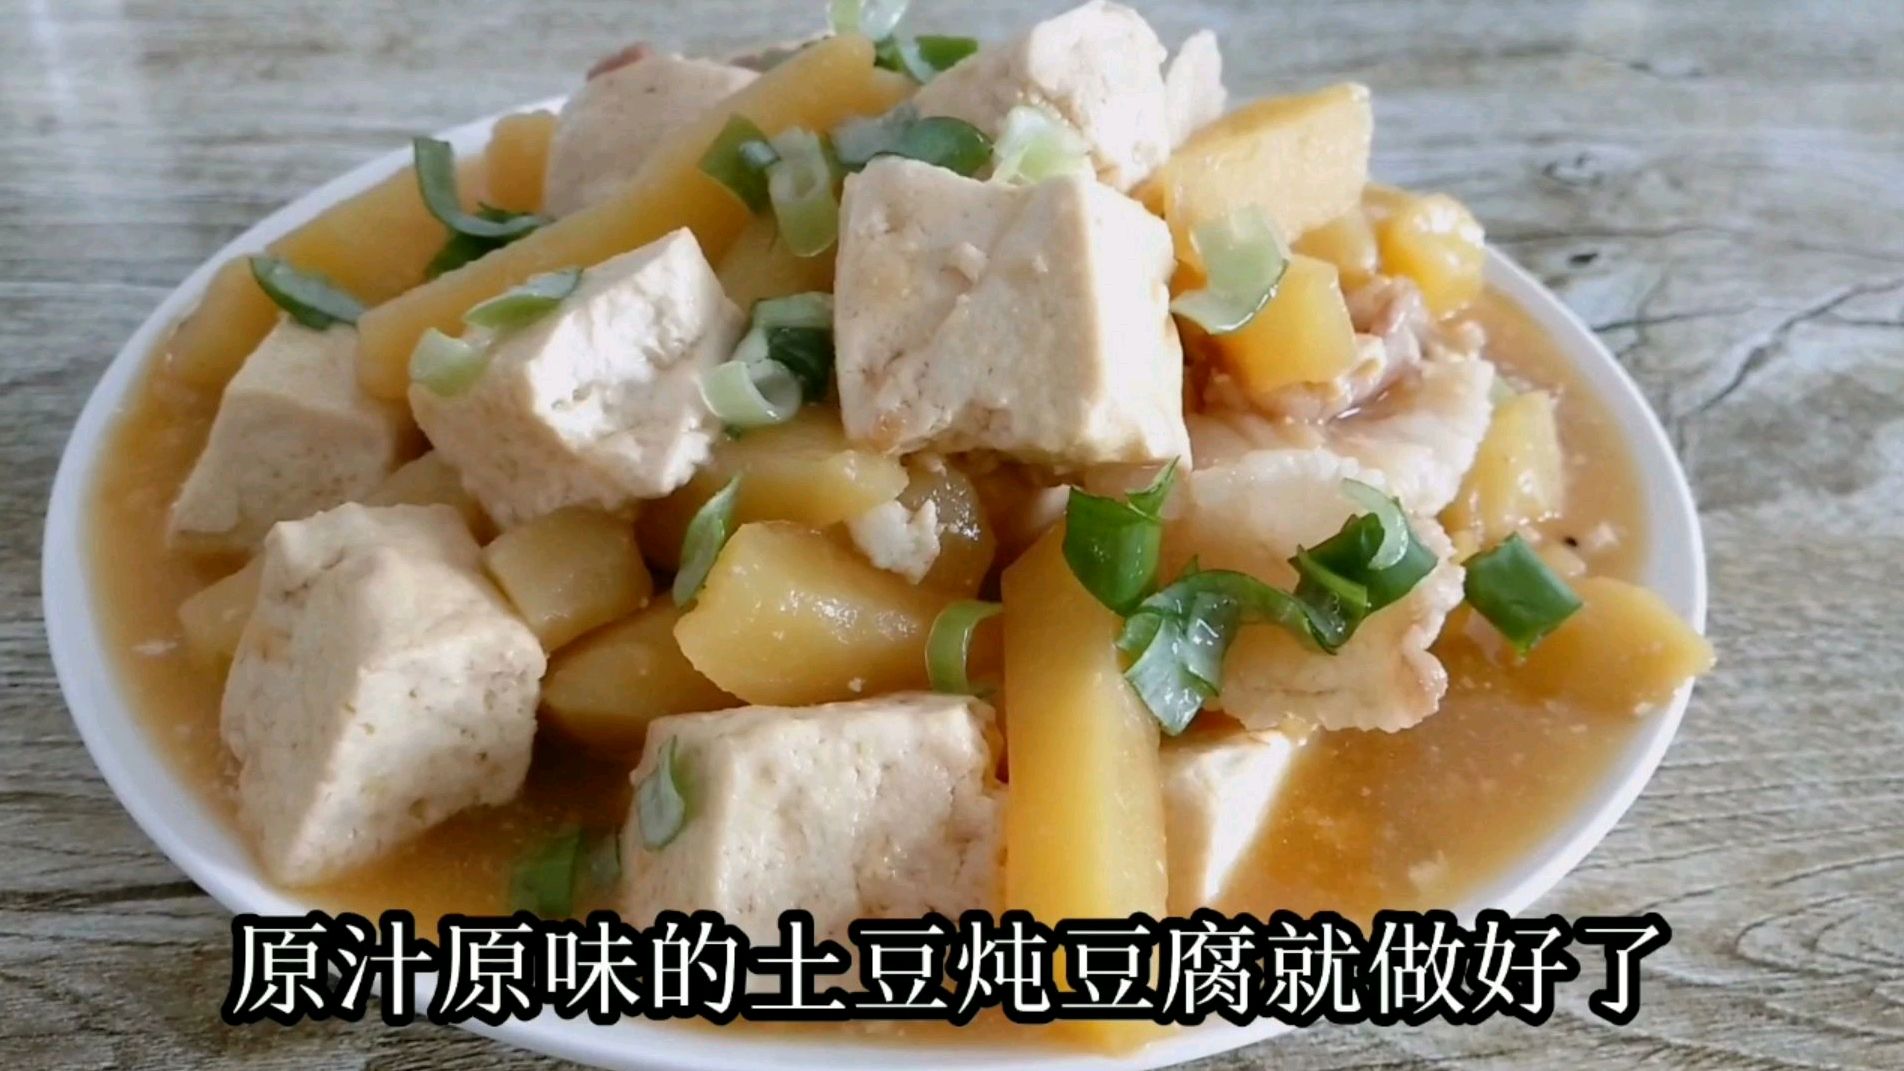 土豆炖豆腐怎么做?